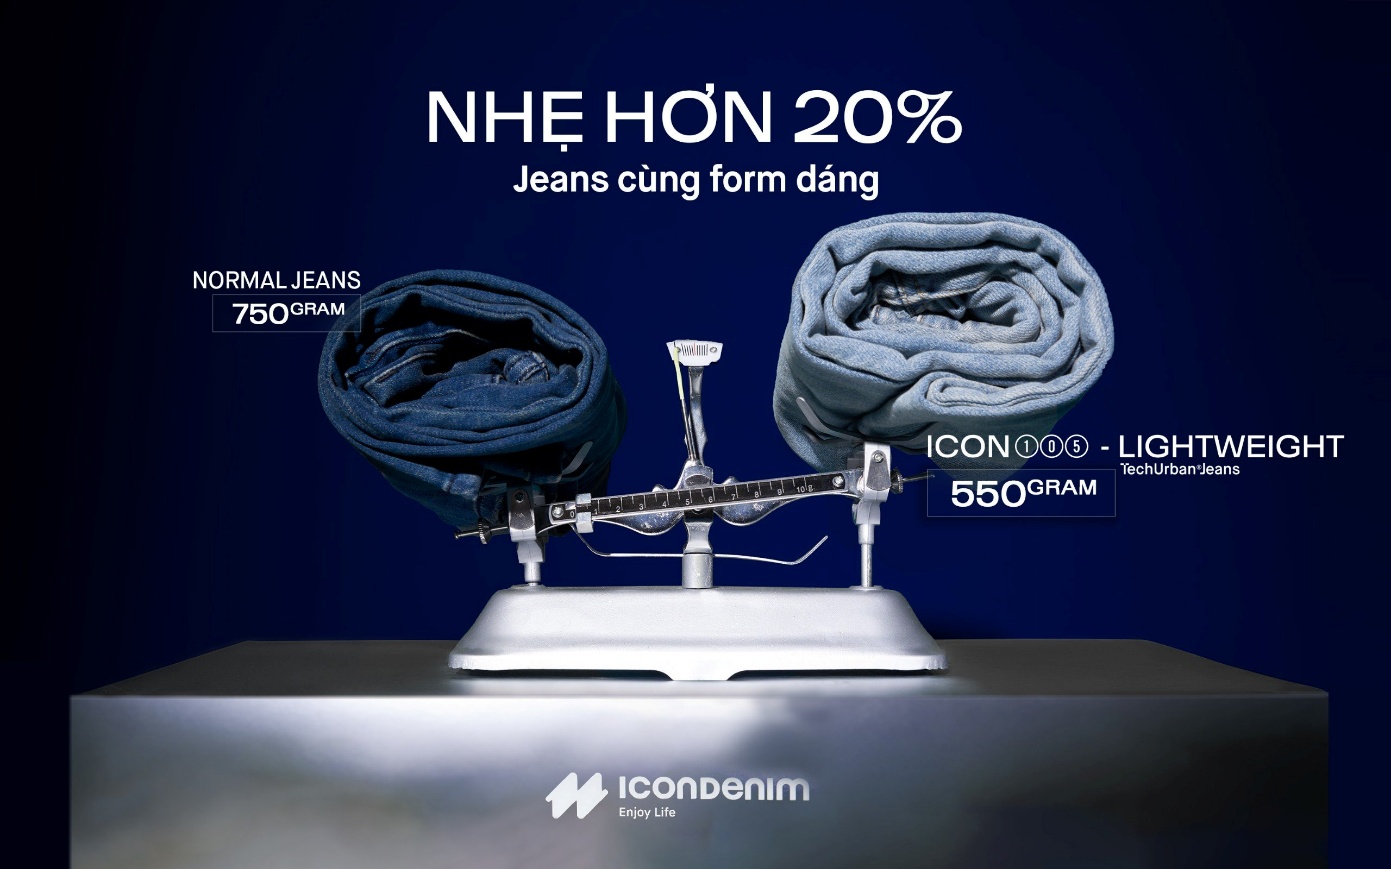 ICONDENIM tiếp tục mở rộng &quot;hệ sinh thái&quot; khi ra mắt dòng jeans ICON105 Lightweight - Ảnh 3.